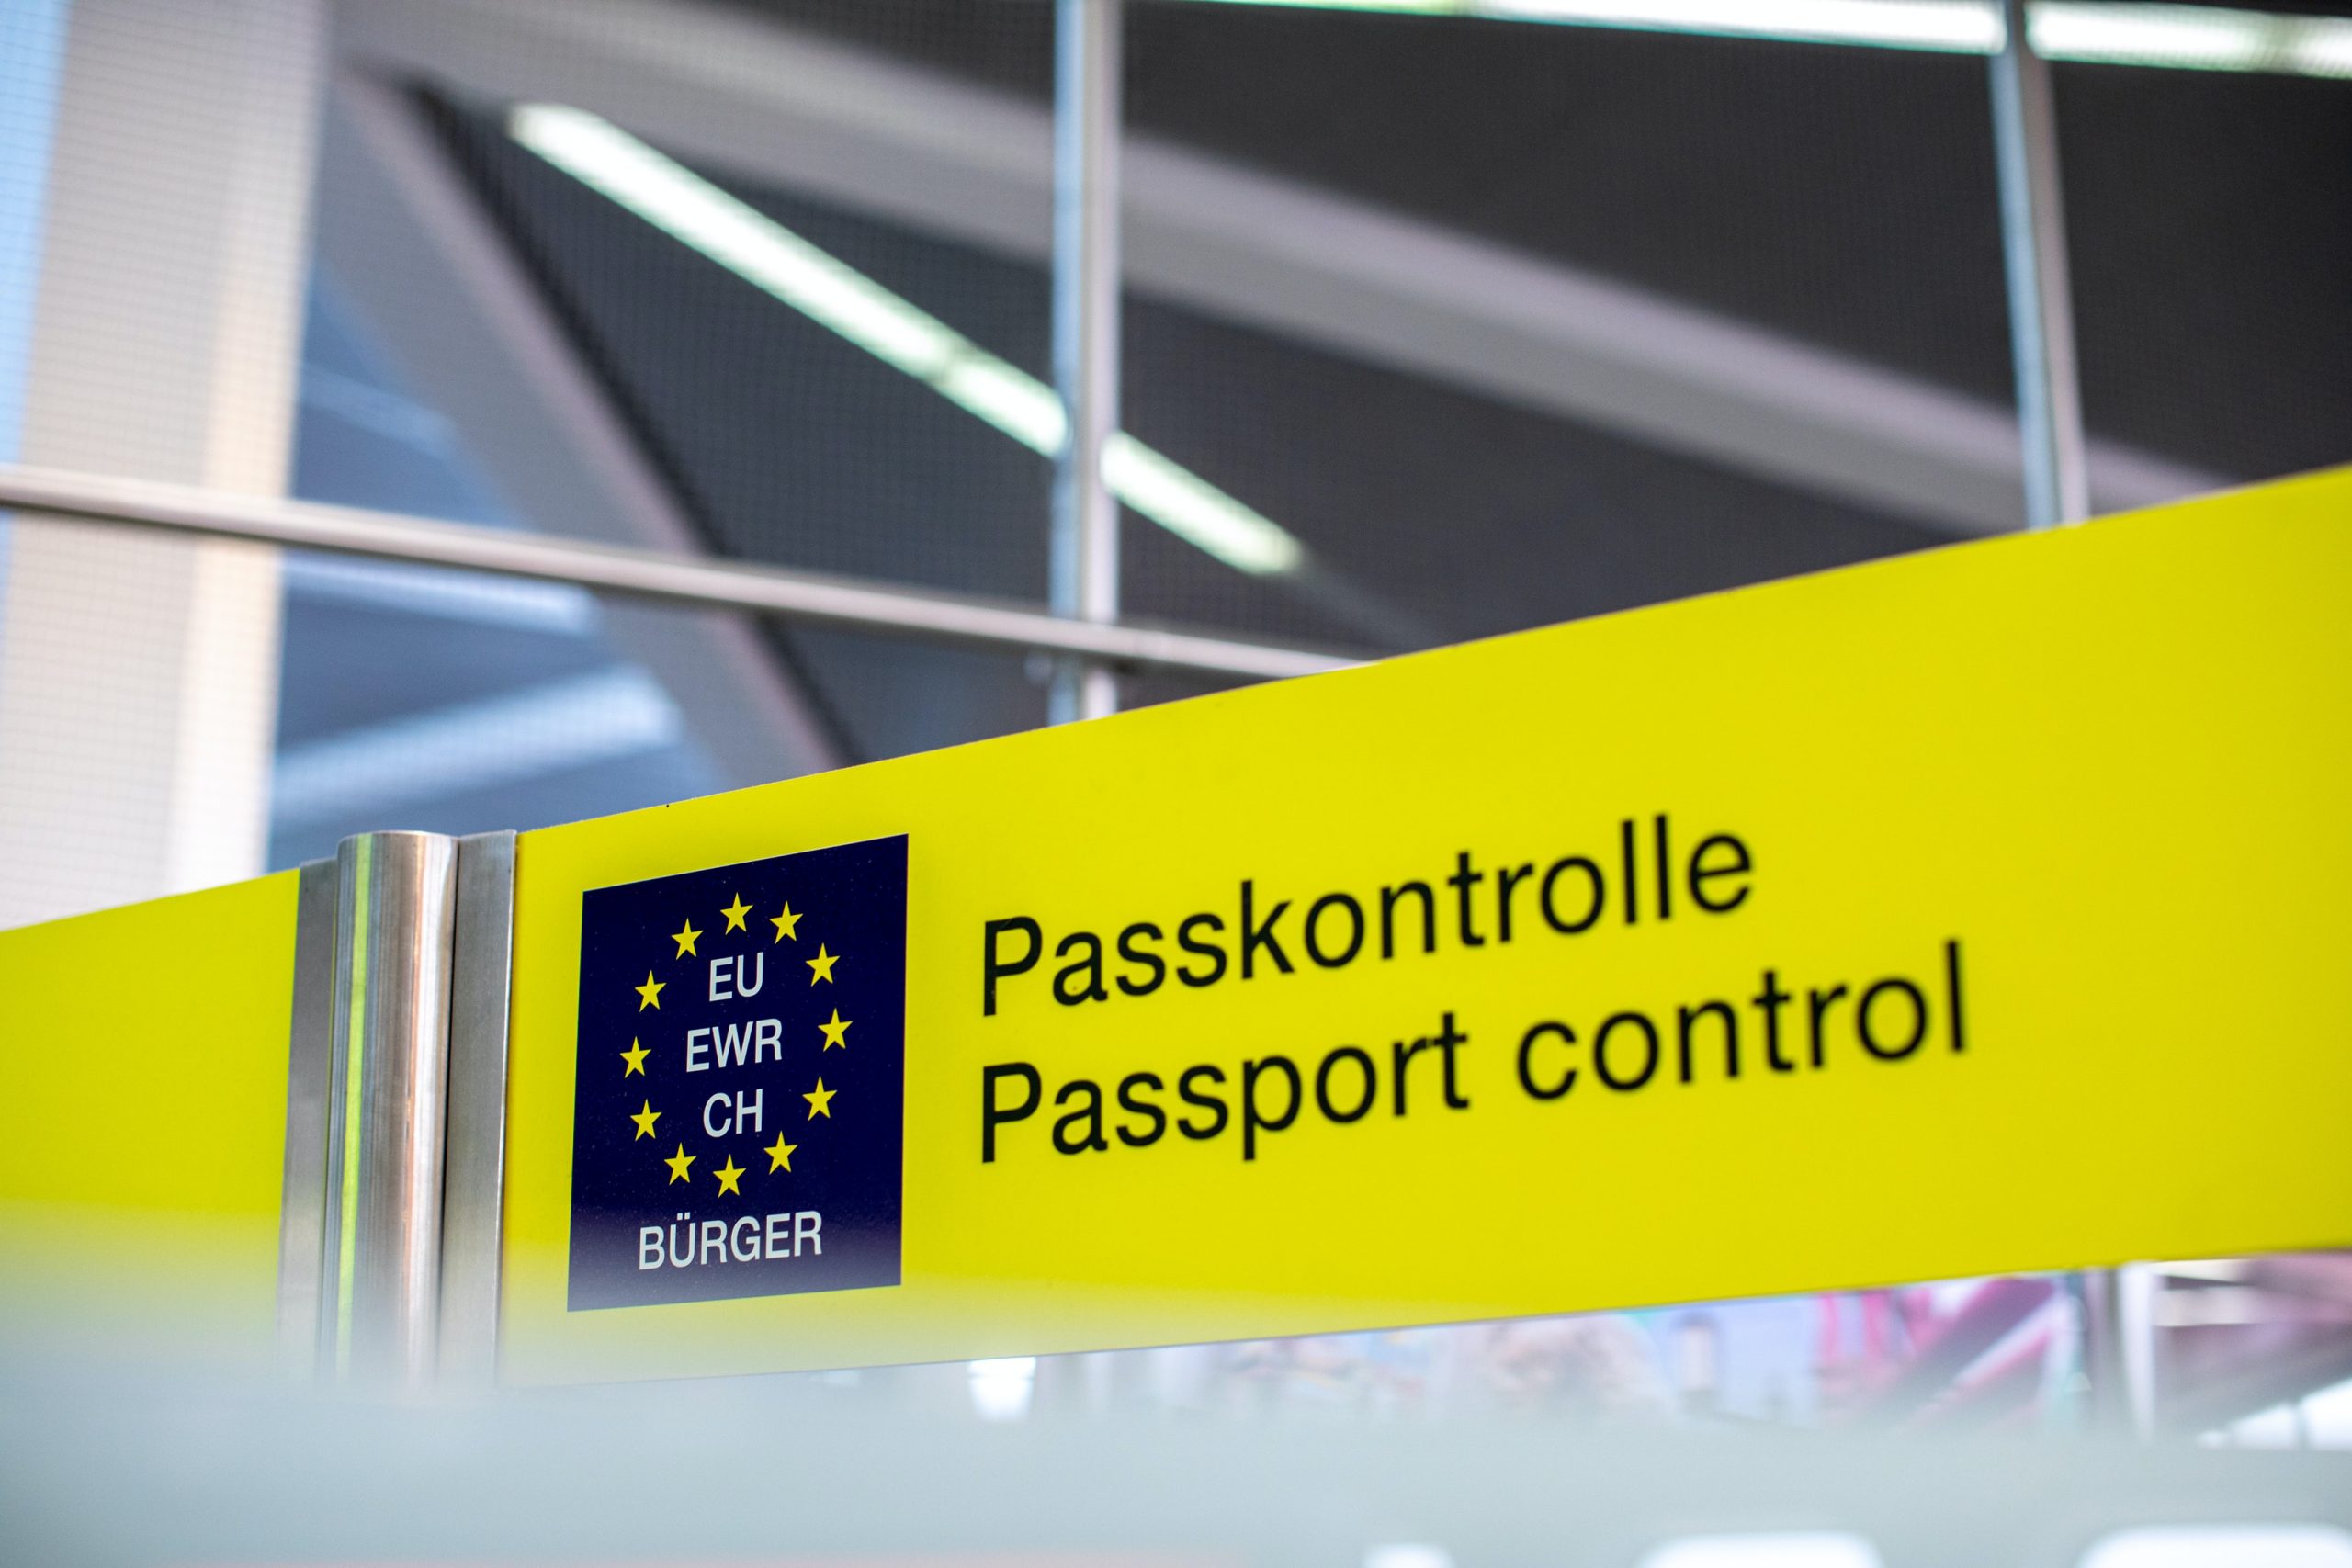 Bild: Daniel Schludi, European Passport Control, CC0, via unsplash.com (keine Änderungen vorgenommen)